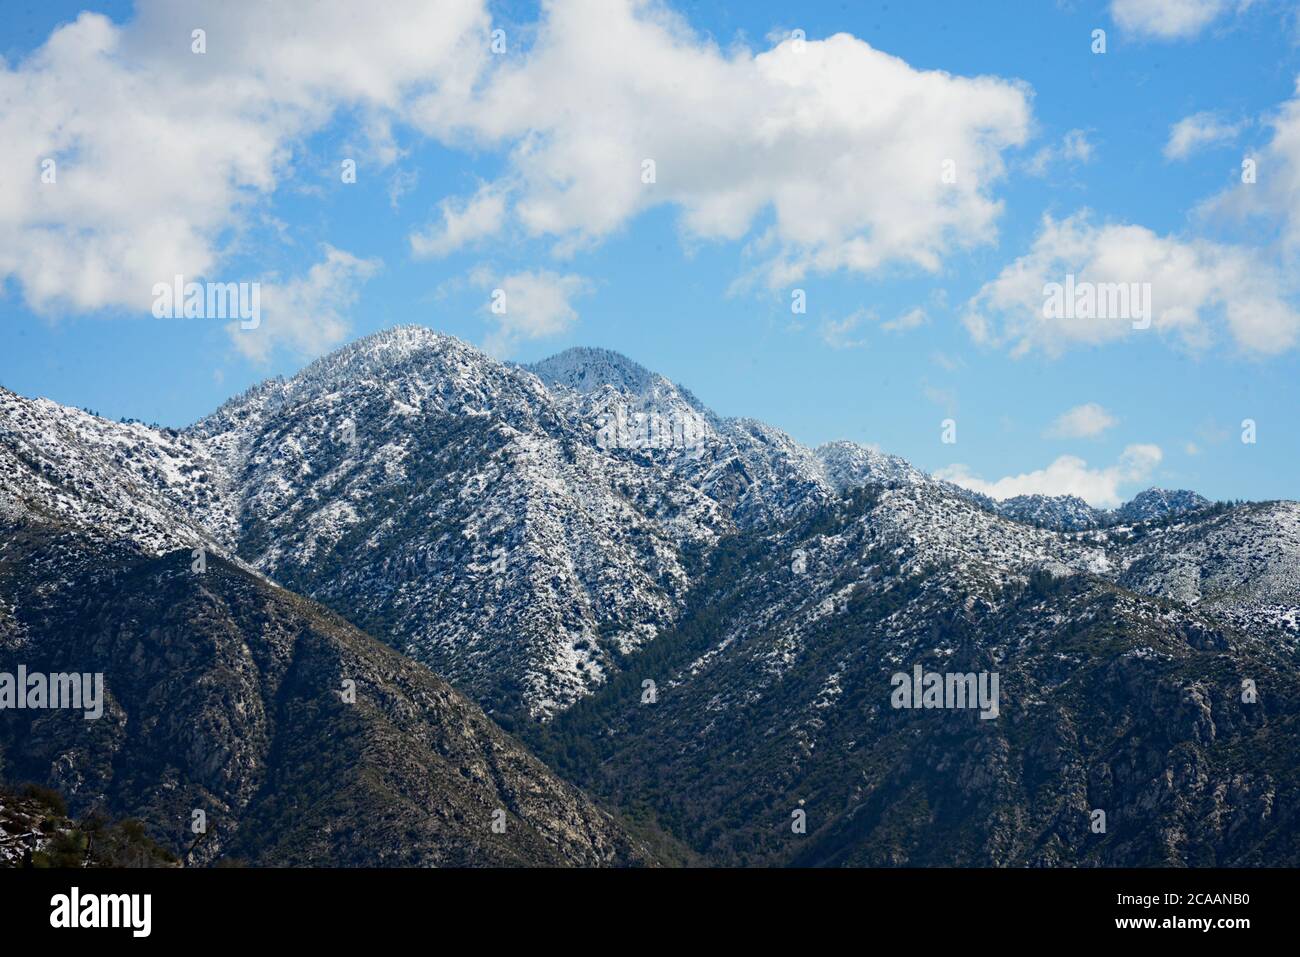 Beeindruckende Landschaft von schneebedeckten Bergen in der Ferne mit geschwollenen weißen Wolken schweben oben in schönen blauen Himmel kühn confident.beauty, Stockfoto